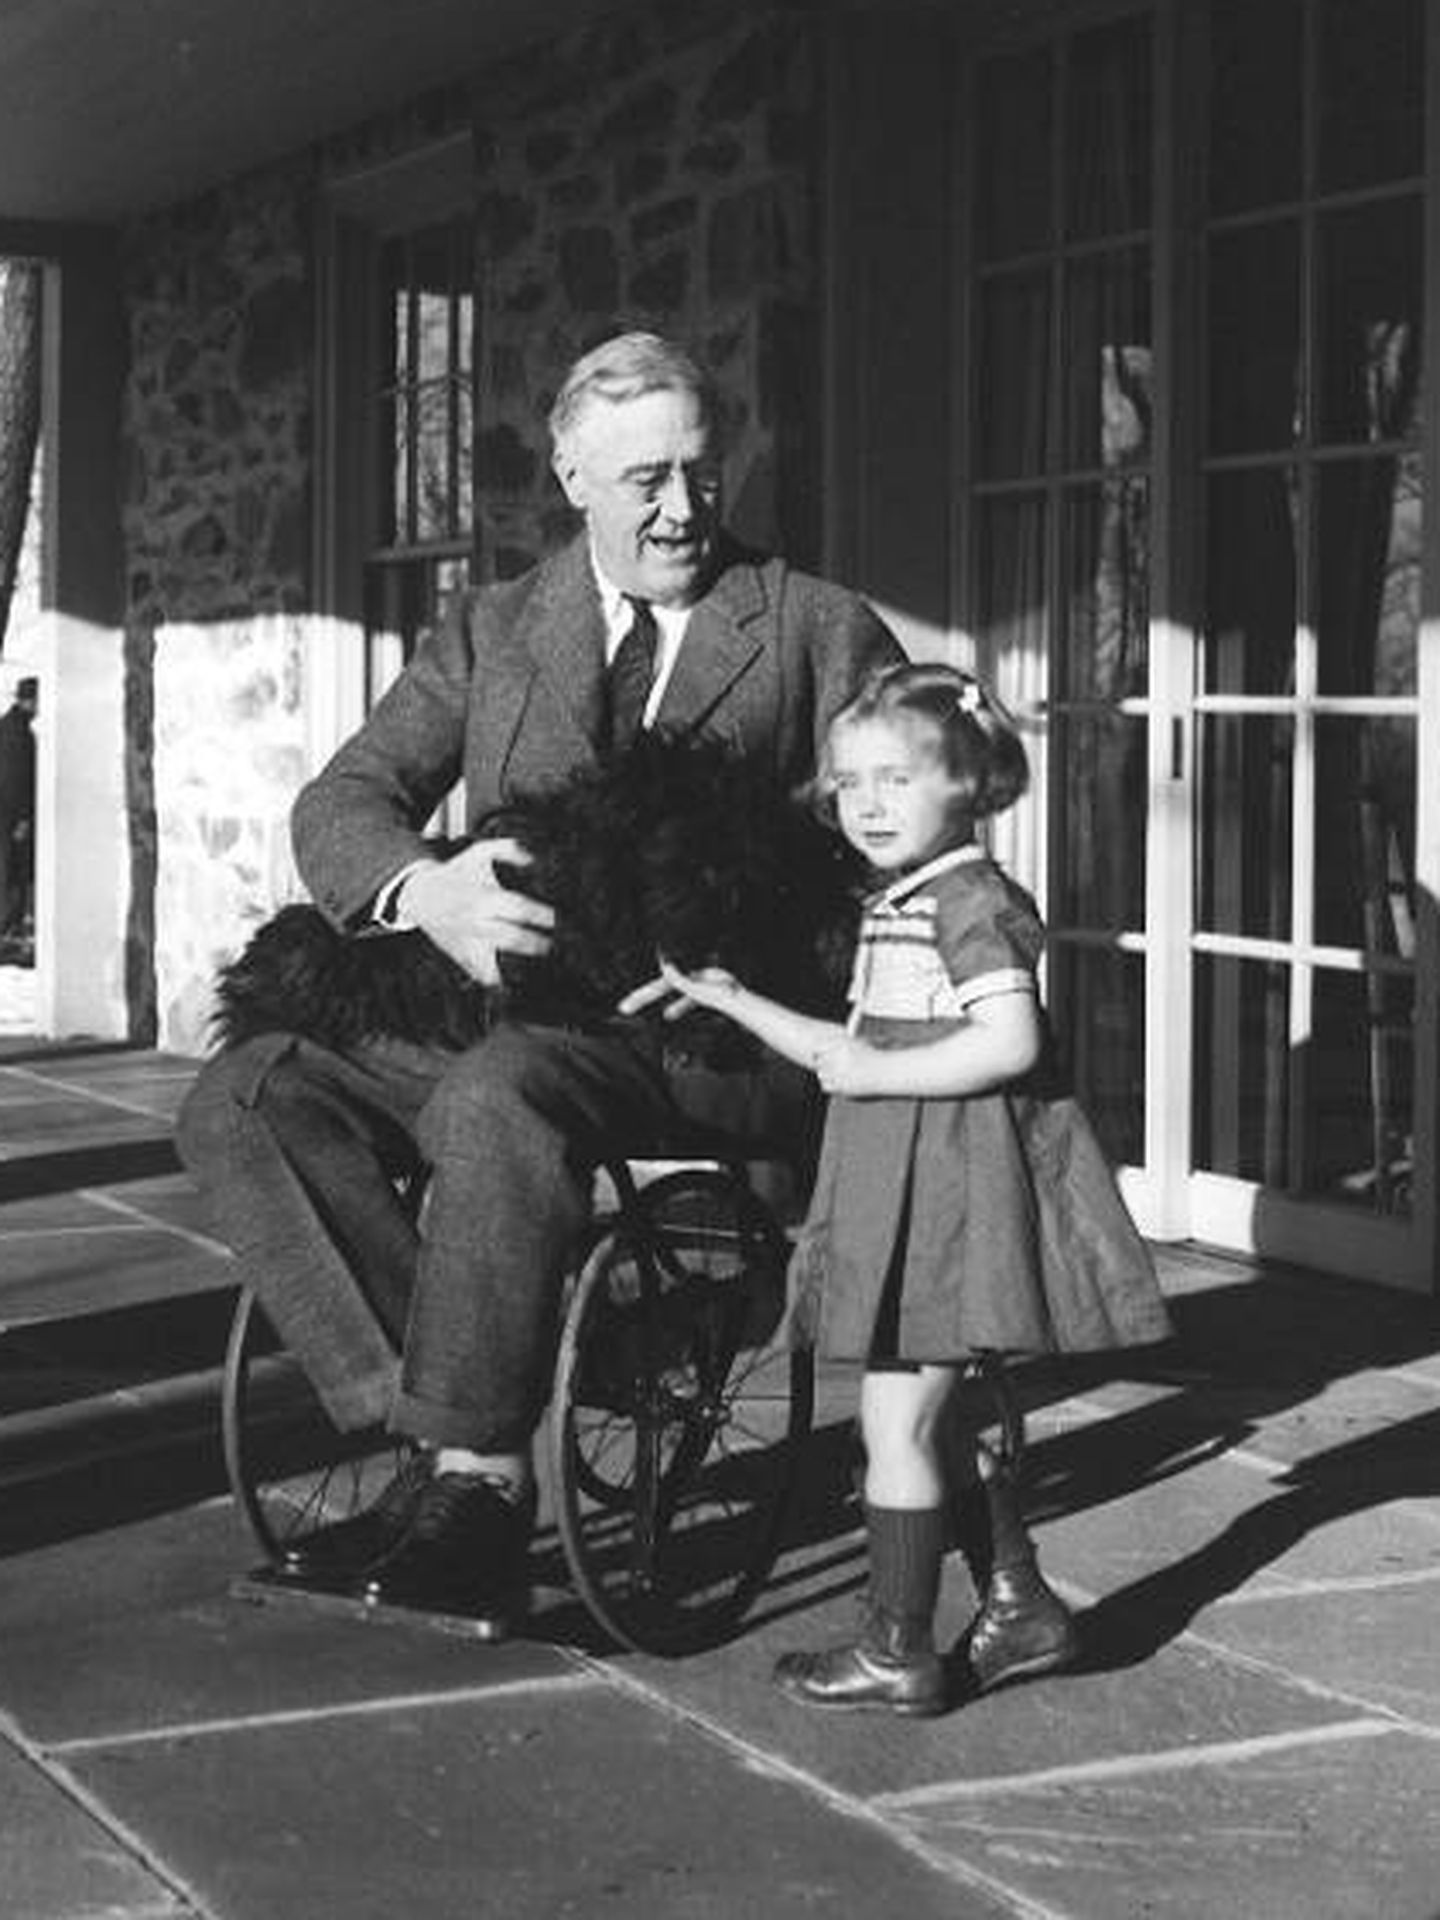 Roosevelt en silla de ruedas. (Dominio público)